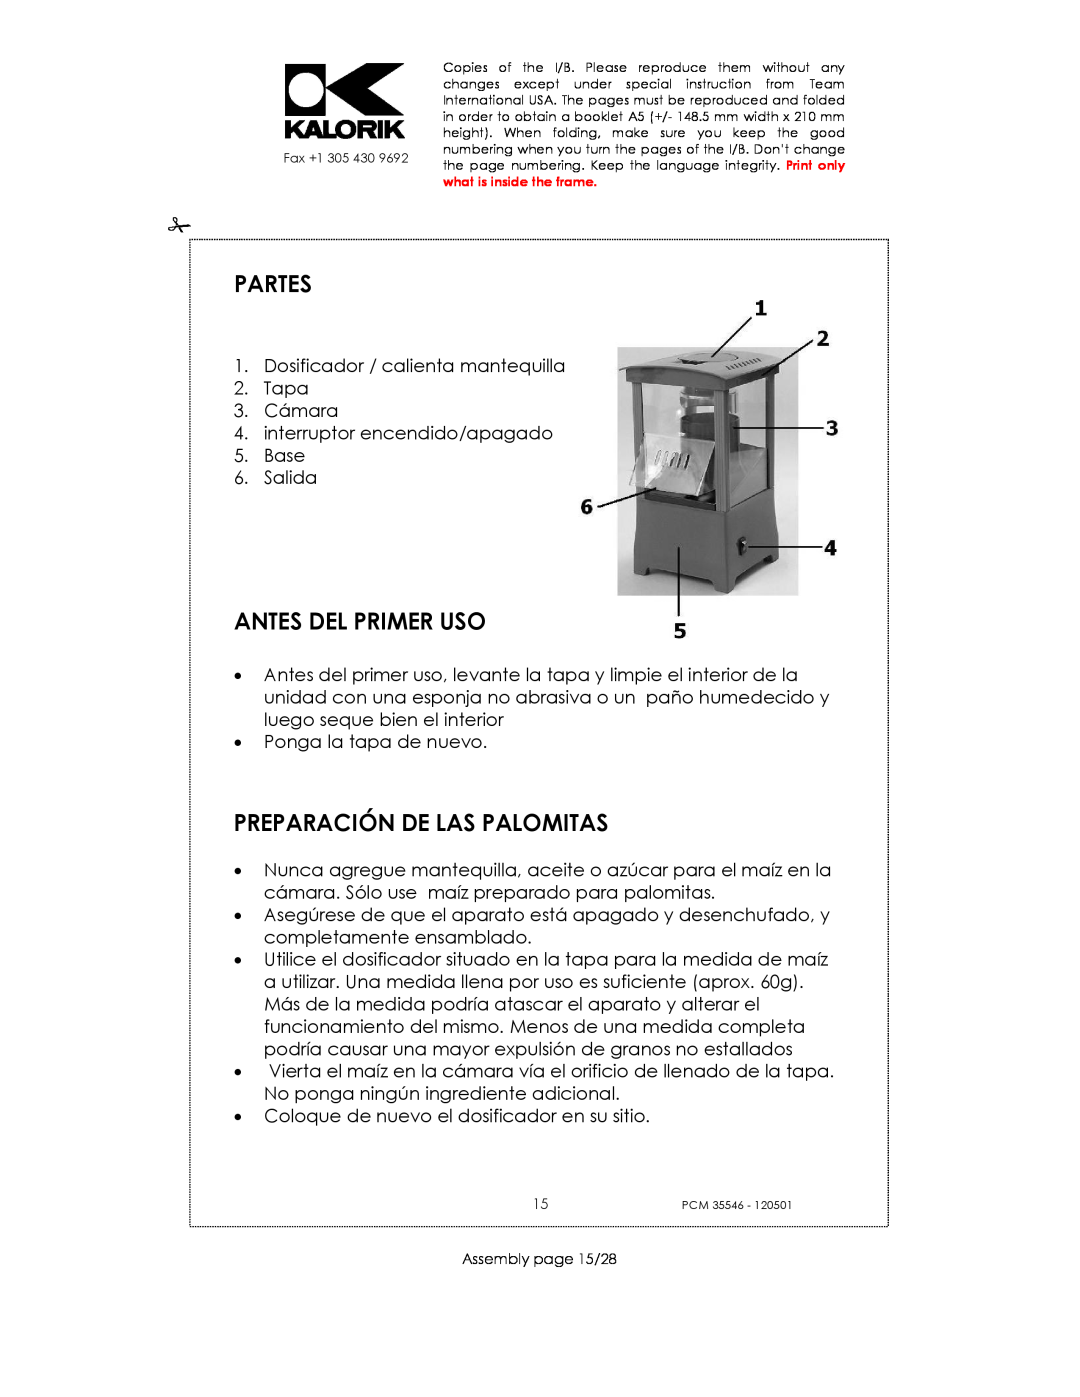 Kalorik PCM 35546 manual Partes, Antes Del Primer Uso, Preparación De Las Palomitas 